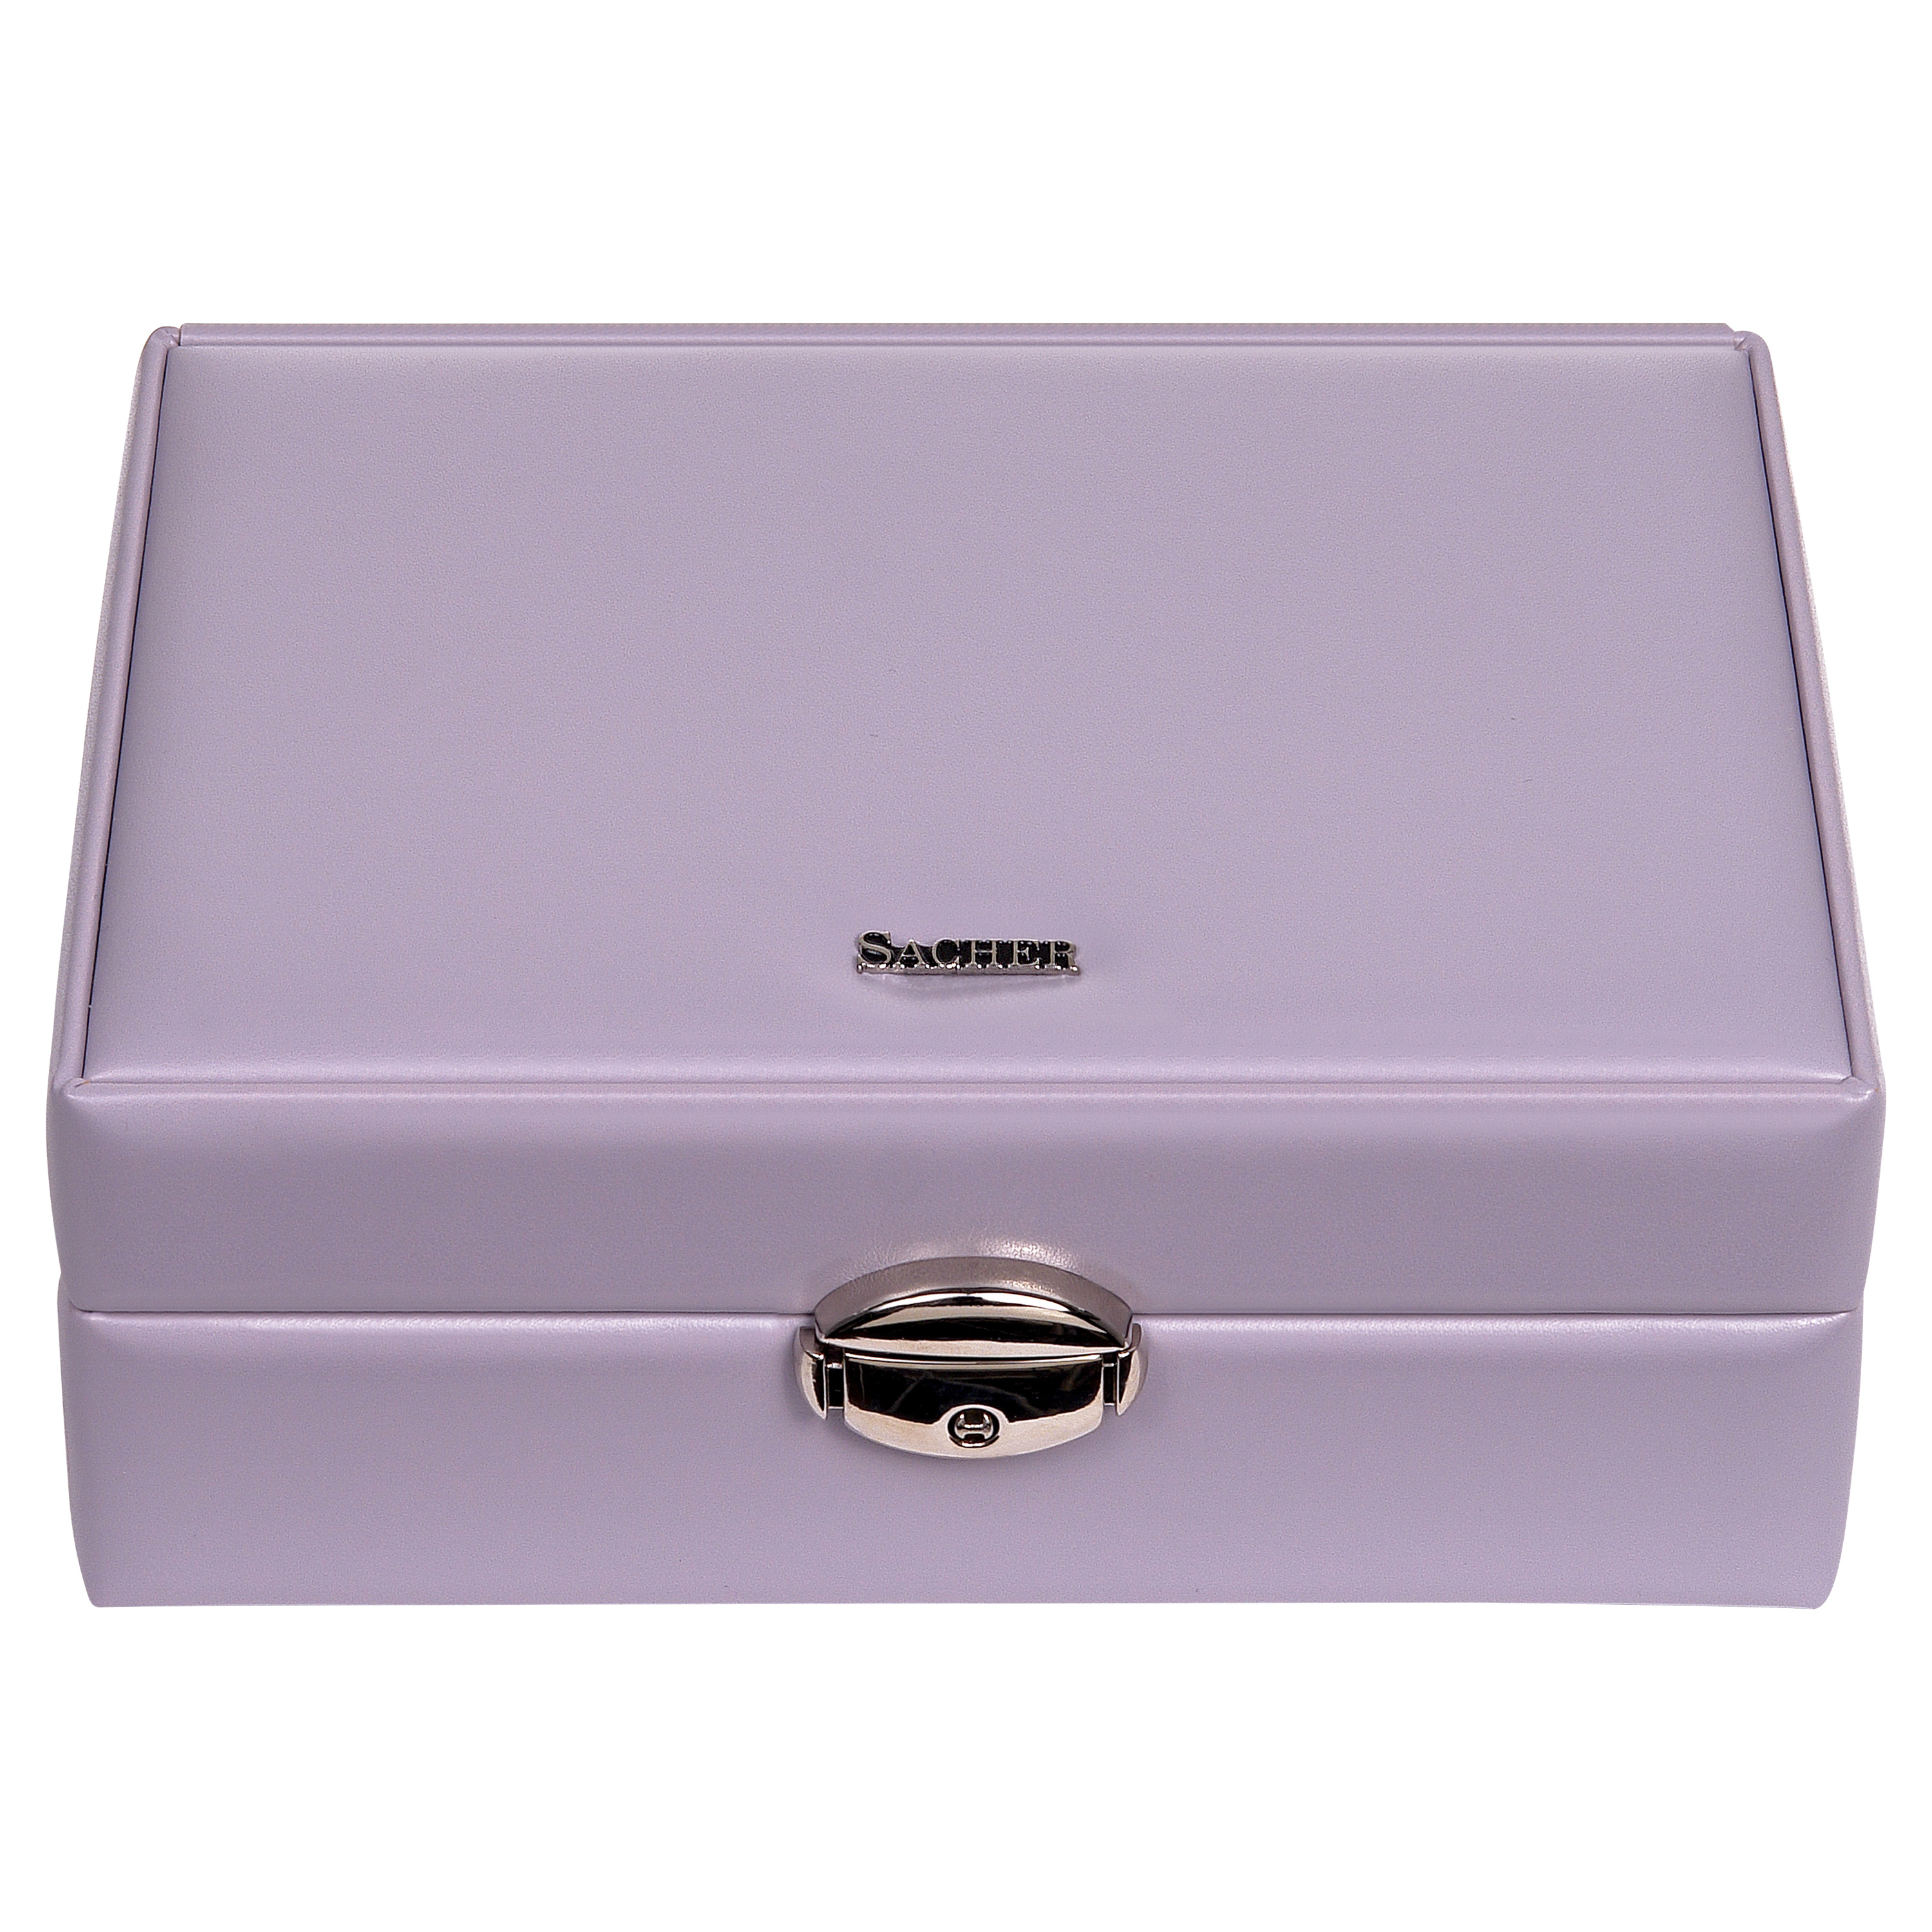 Britta colouranti / lilac jewellery box